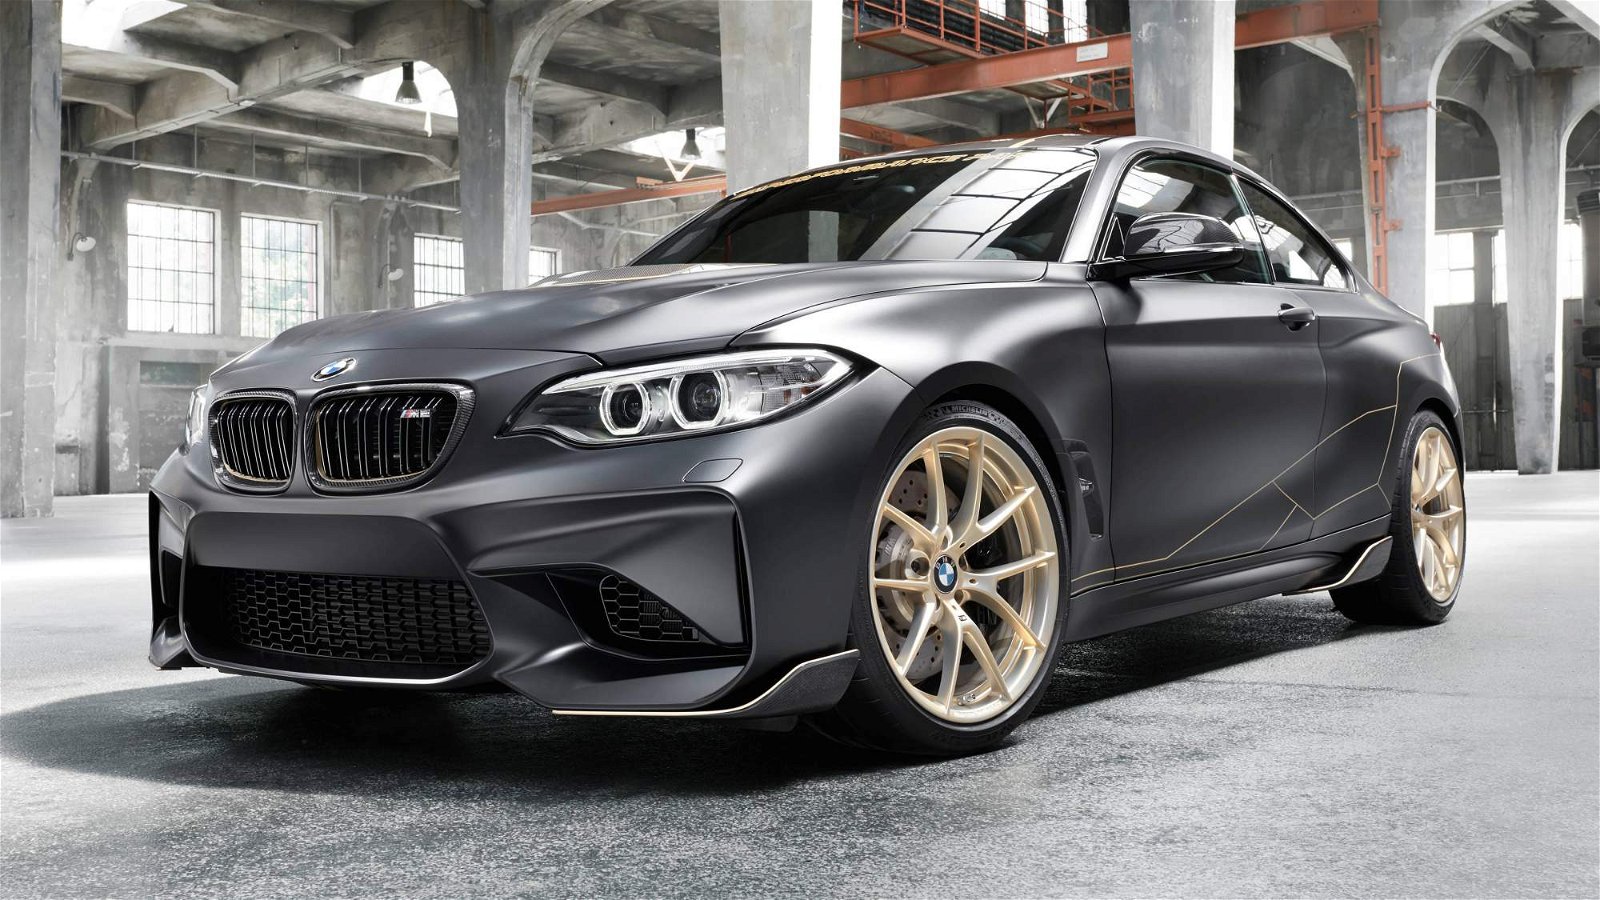 BMW-M-Performance-Parts-Concept-0